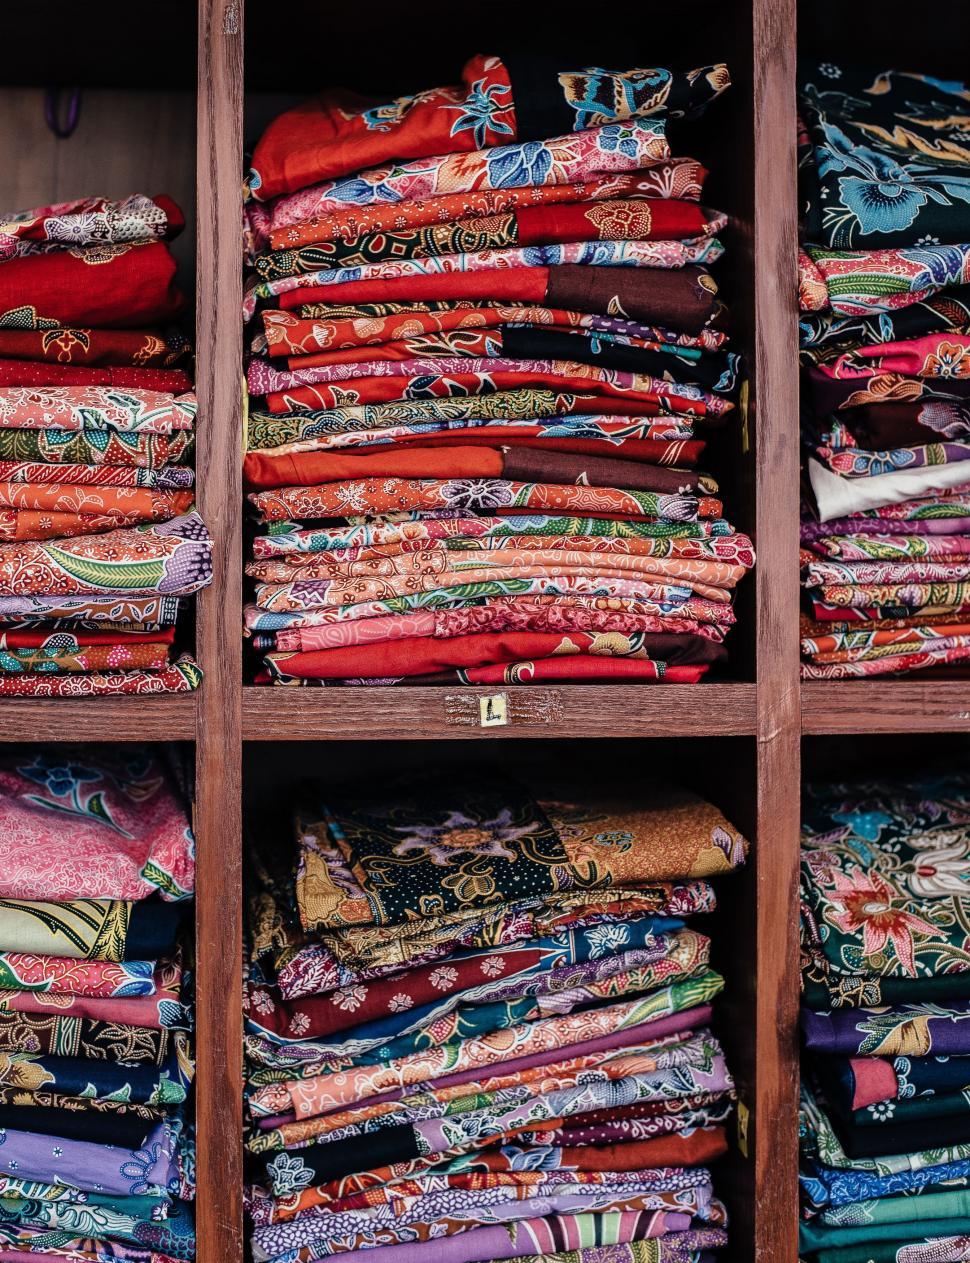 Free Image of Colorful Fabrics Arranged on Wooden Shelf 